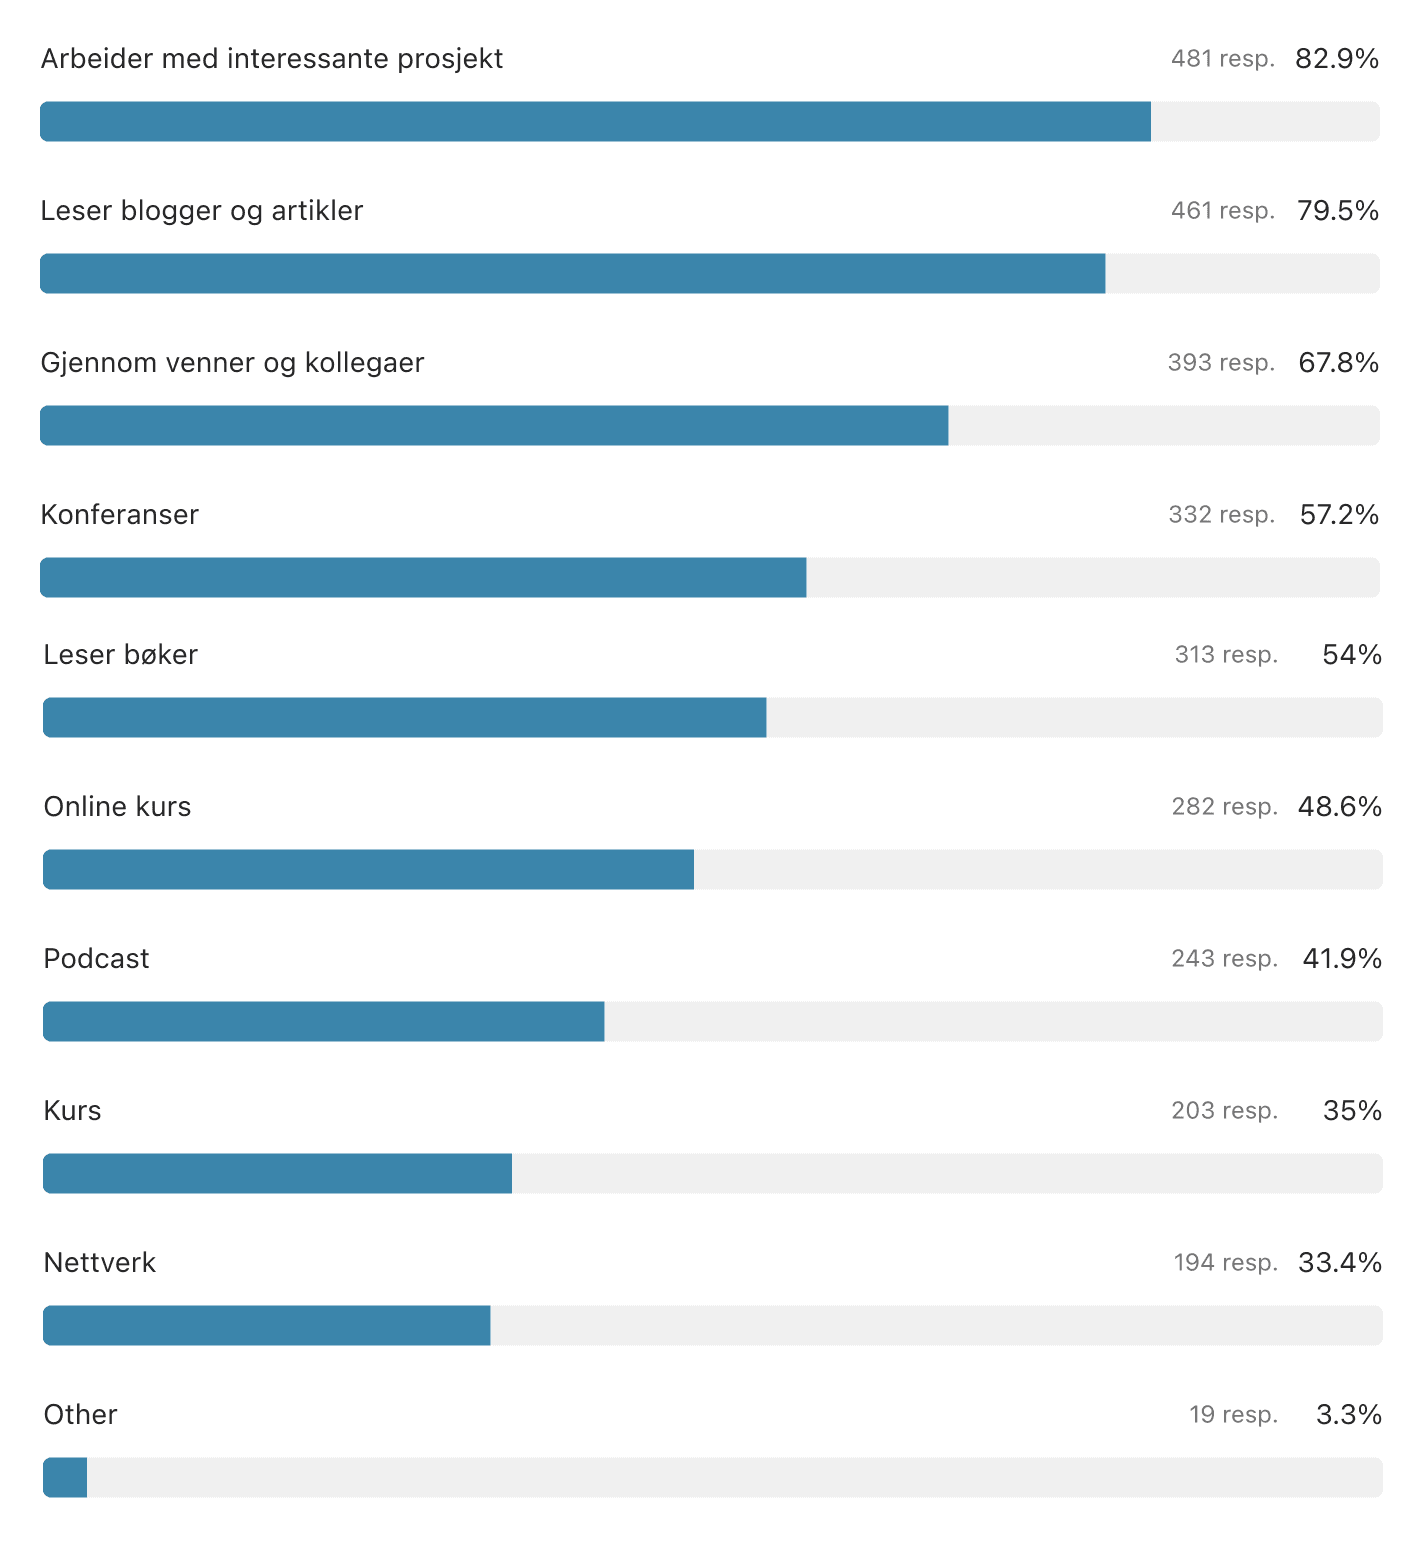 (Graf) Hvordan bygger du din kompetanse? Arbeider med interessante prosjekt (82,9 %), Leser blogger og artikler (79,5 %), Gjennom venner og kollegaer (67,8 %), Konferanser (57,2 %), Leser bøker (54 %), Online kurs (48,6 %), Podcast (41,9 %), Kurs (35 %), Nettverk (33,4 %), Annet (3,3 %)